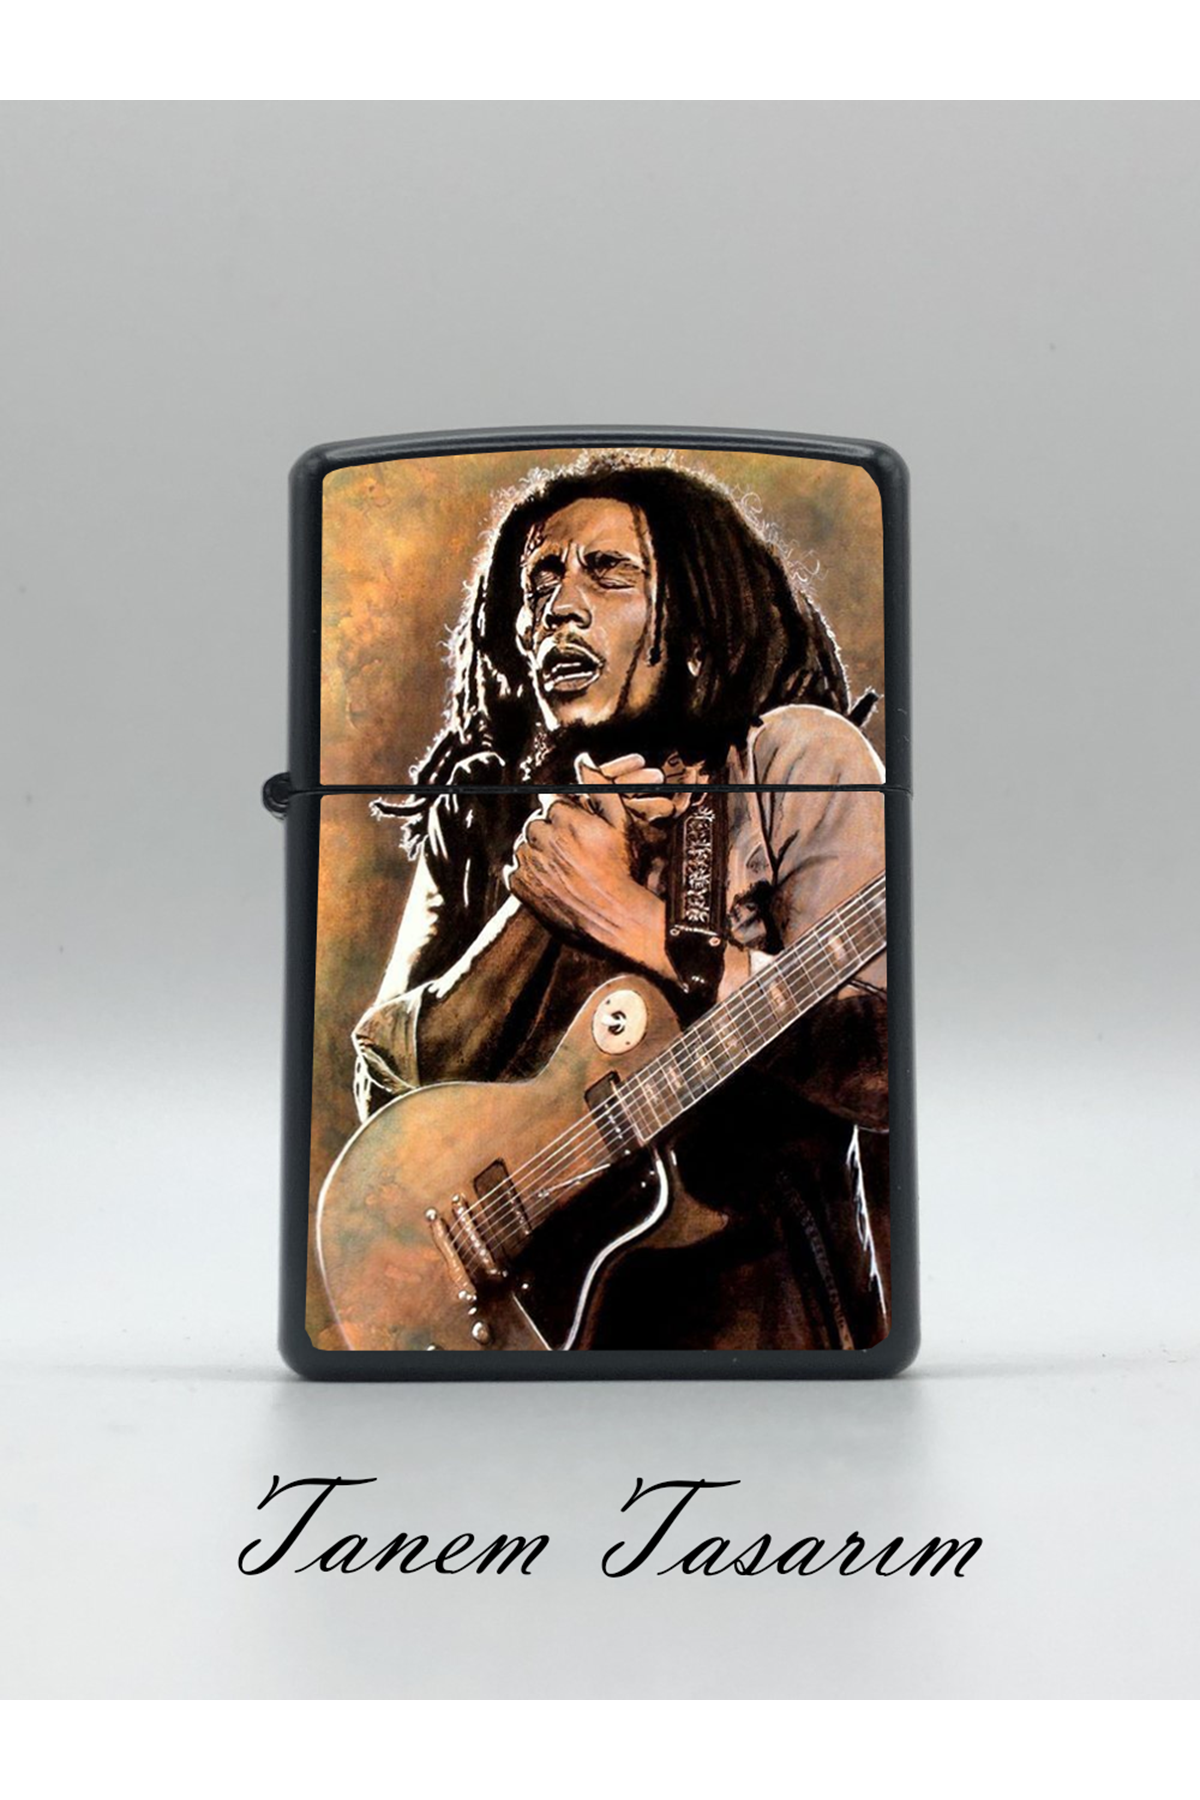 Bob Marley 5 - Özel Tasarım Uv Baskı Benzinli Çakmak (Kişiye Özel İsim Yazılabilir)